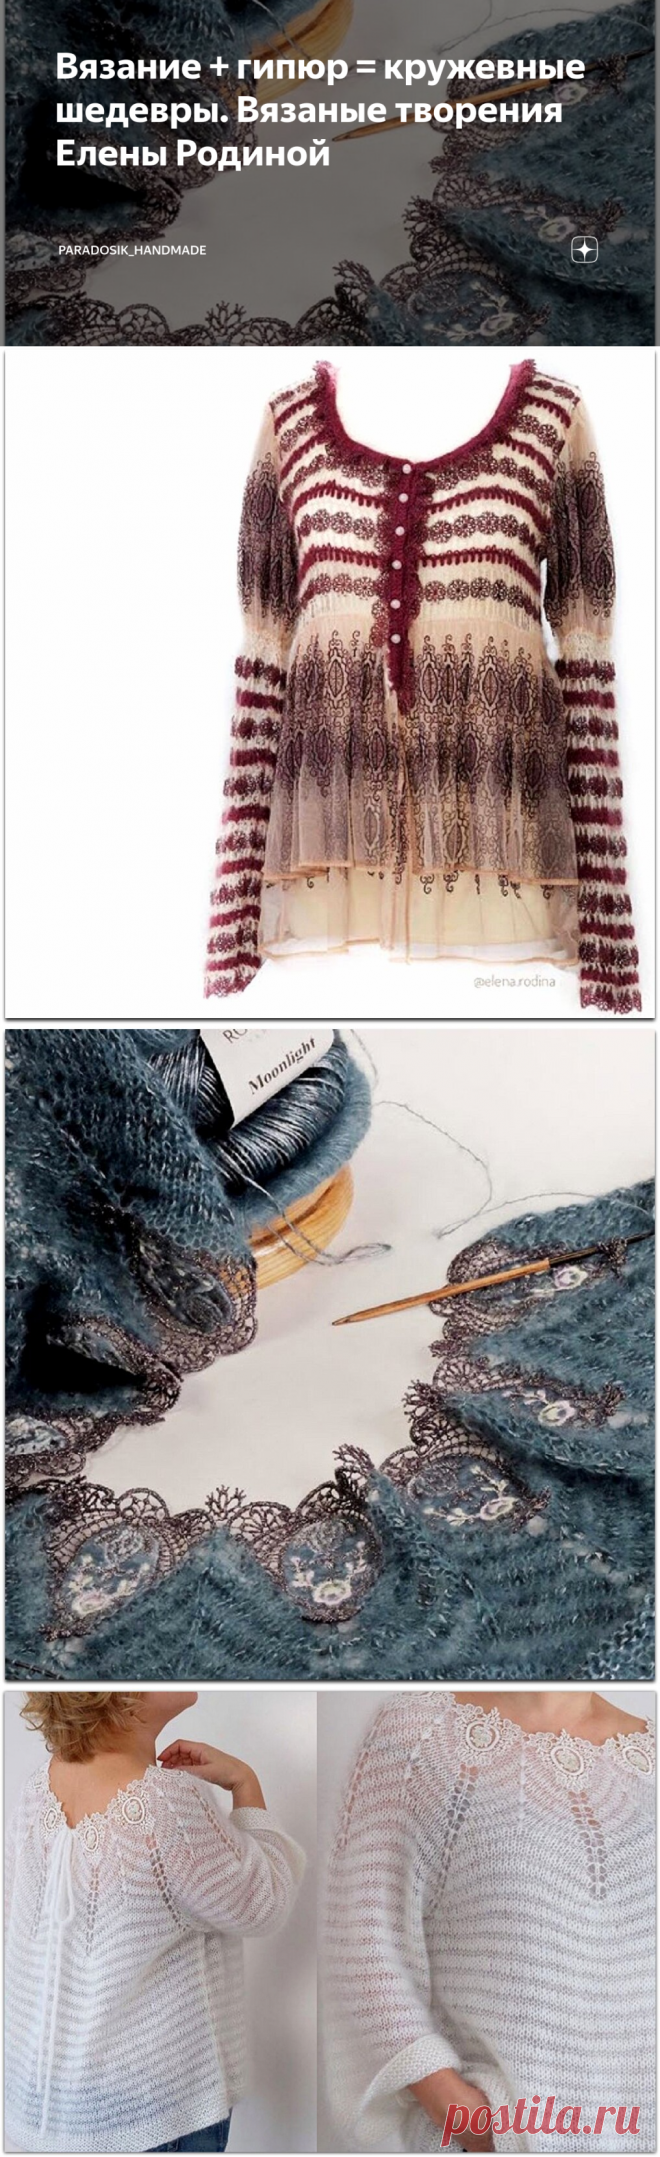 Вязание + гипюр = кружевные шедевры. Вязаные творения Елены Родиной | Paradosik_Handmade | Яндекс Дзен